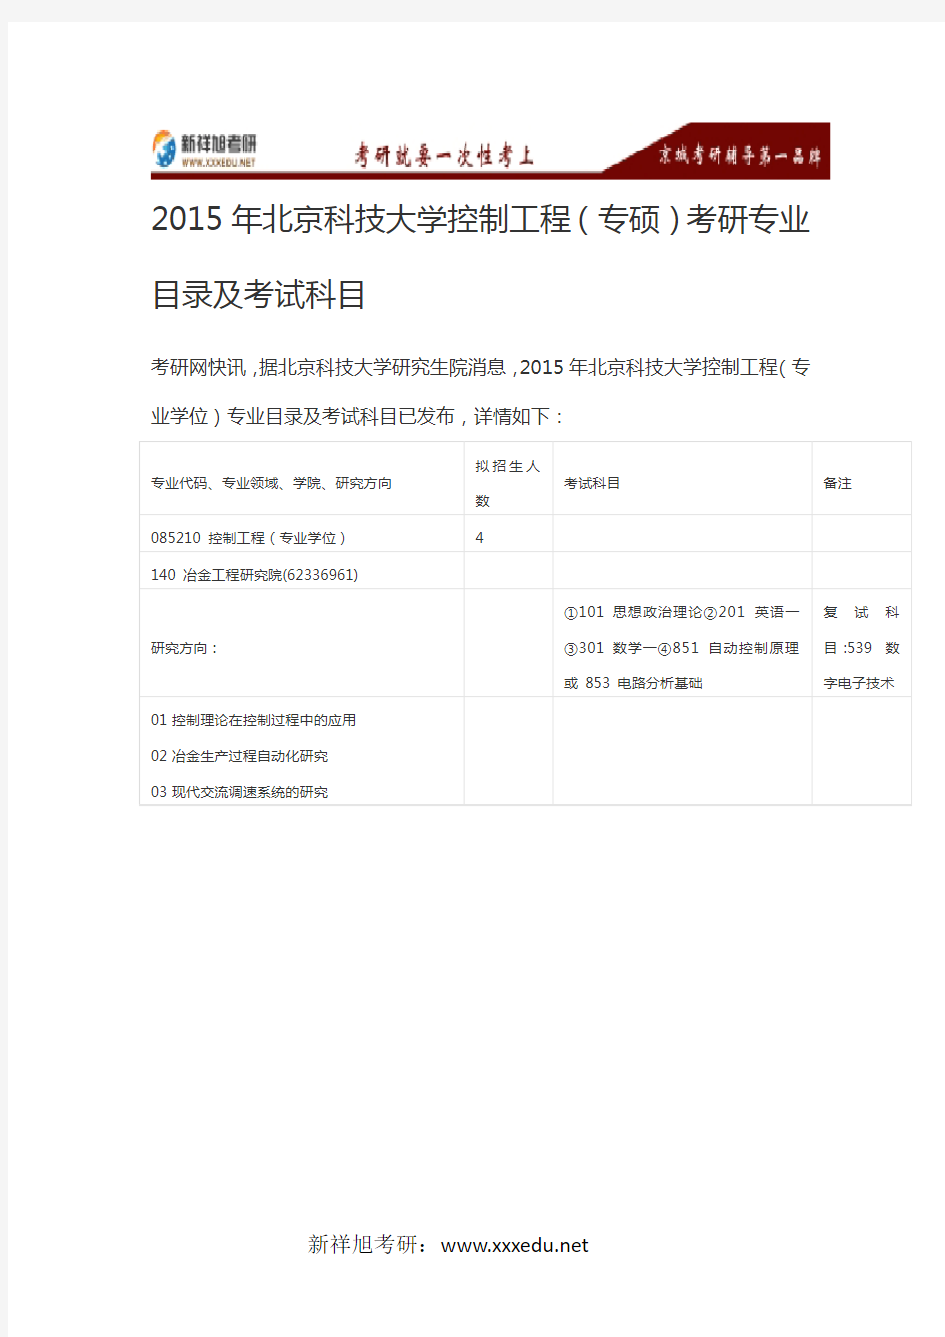 2015年北京科技大学控制工程(专硕)考研专业目录及考试科目